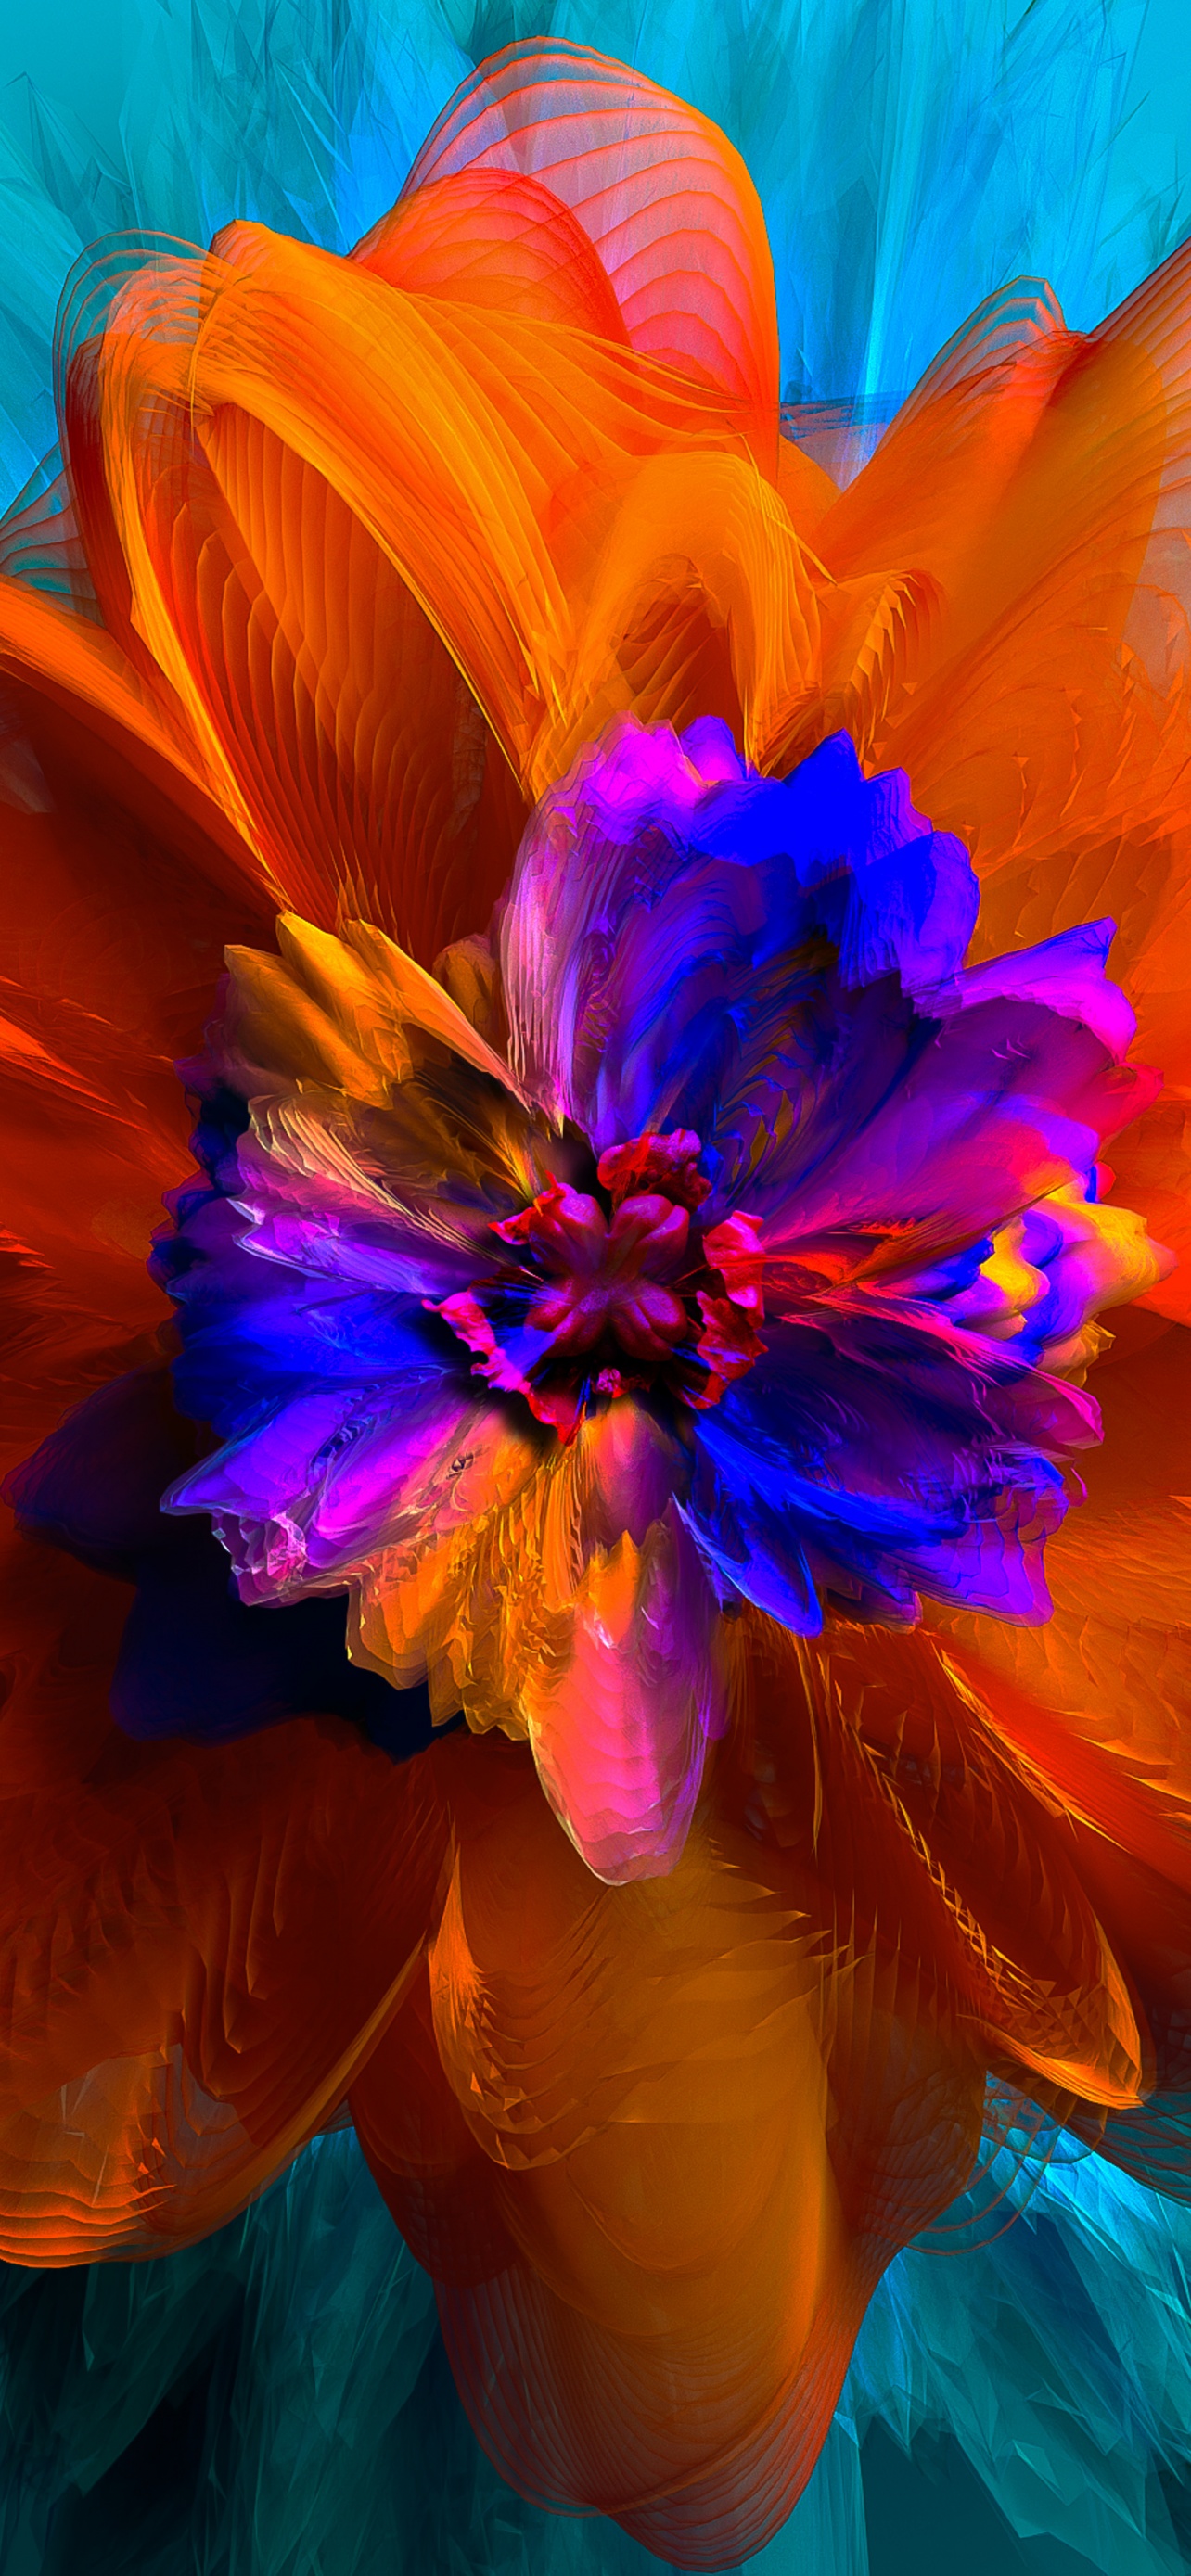 Hình nền hoa trừu tượng 4K 3D: Khám phá những kiệt tác hoa trừu tượng với hình nền 4K 3D sắc nét. Với màu sắc tươi tắn và phong cách độc đáo, hình nền sẽ làm cho màn hình máy tính của bạn thêm trẻ trung và thú vị.